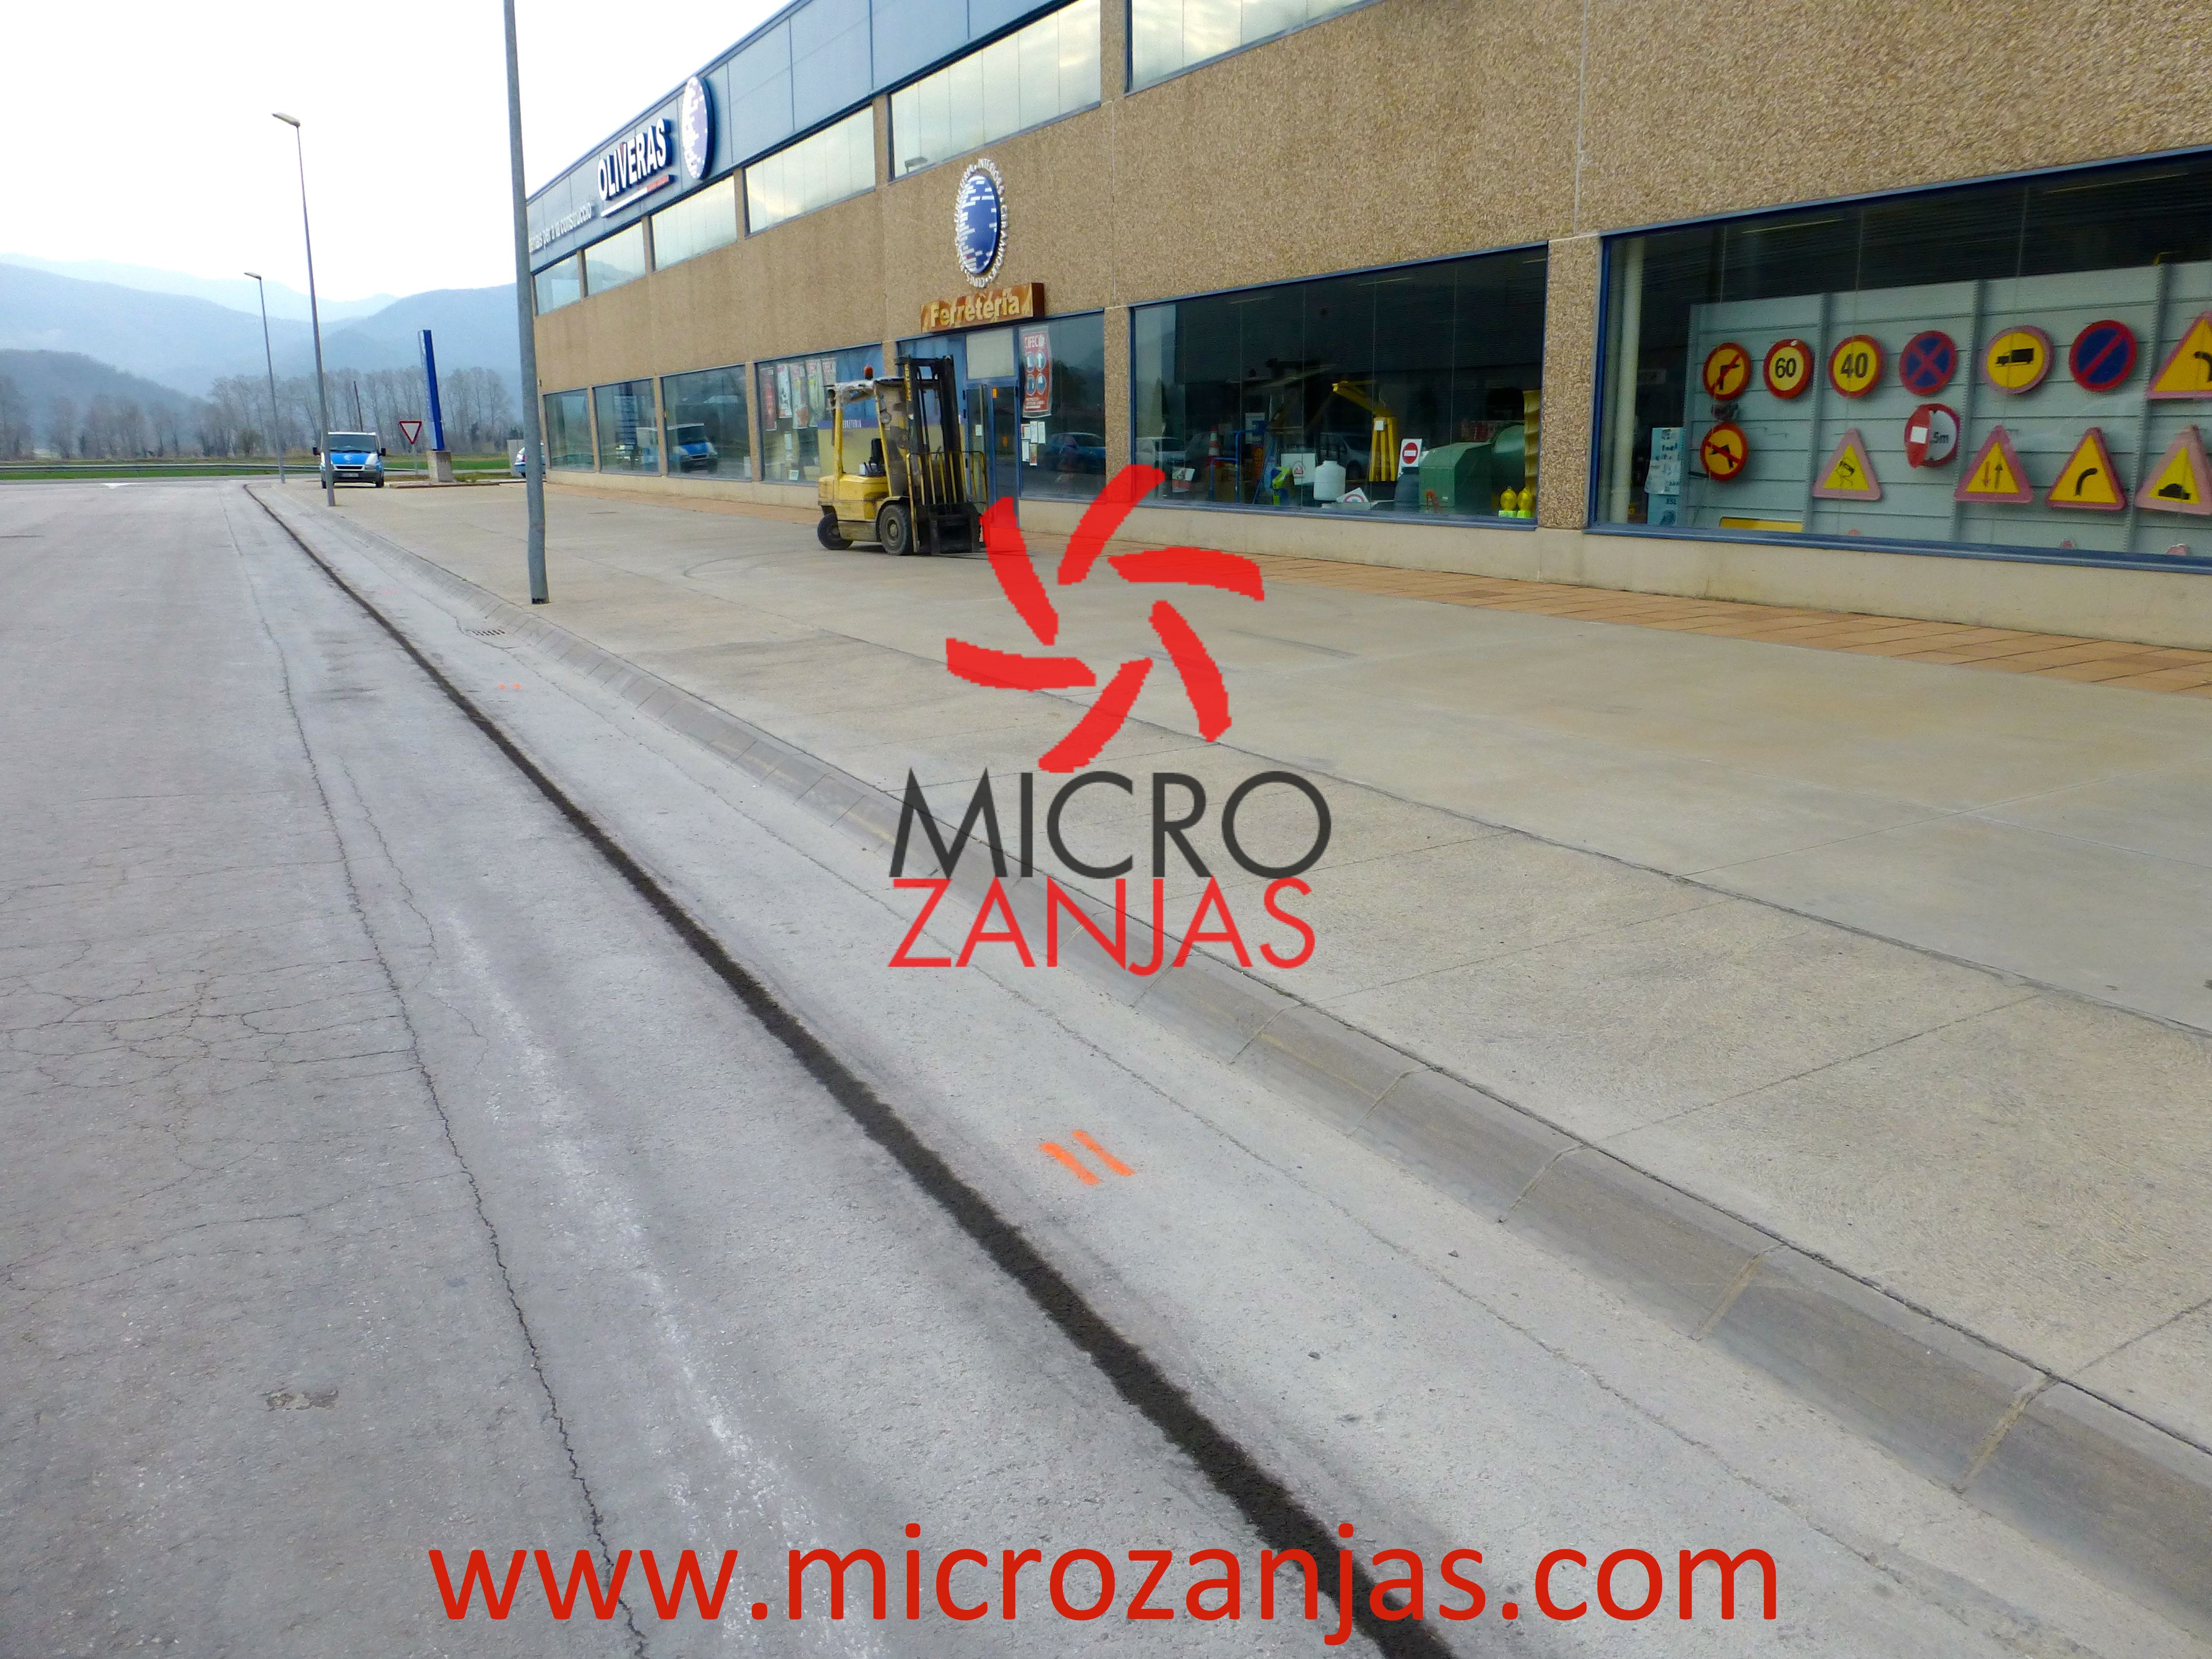 Trabajos de microzanjado e instalación de microductos